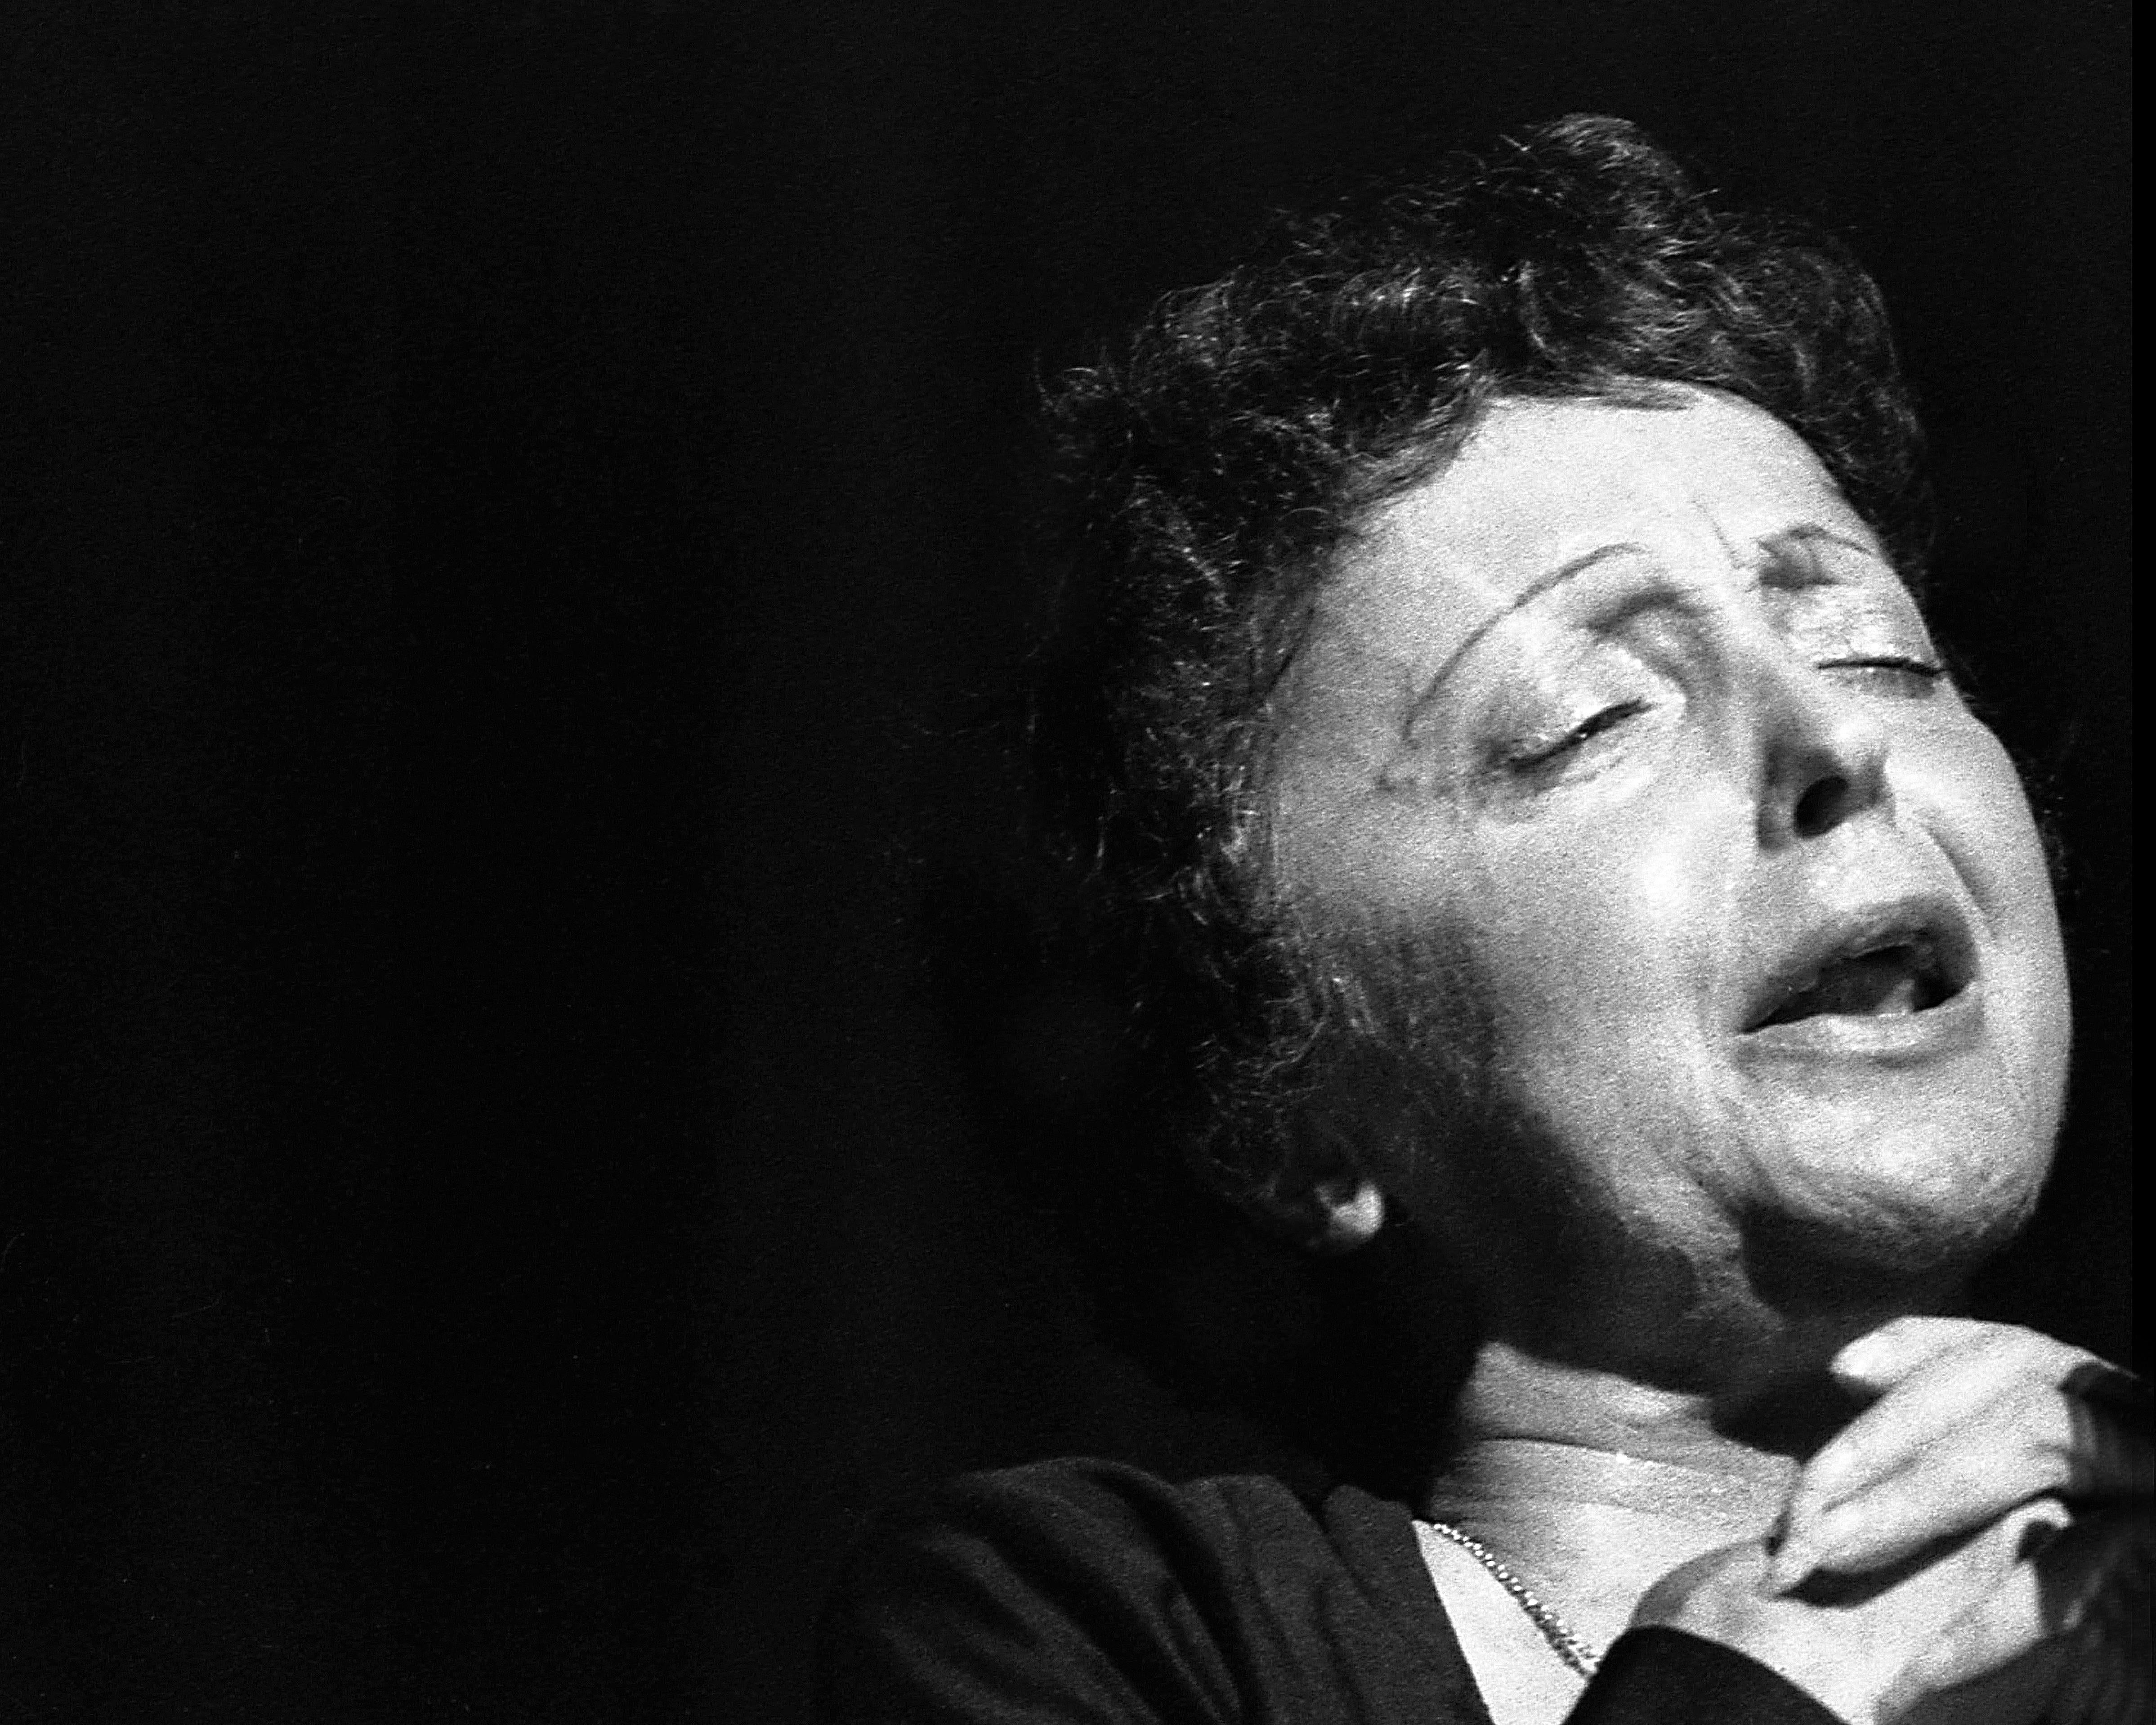 André Sas Portrait Photograph - Edith Piaf during a concert